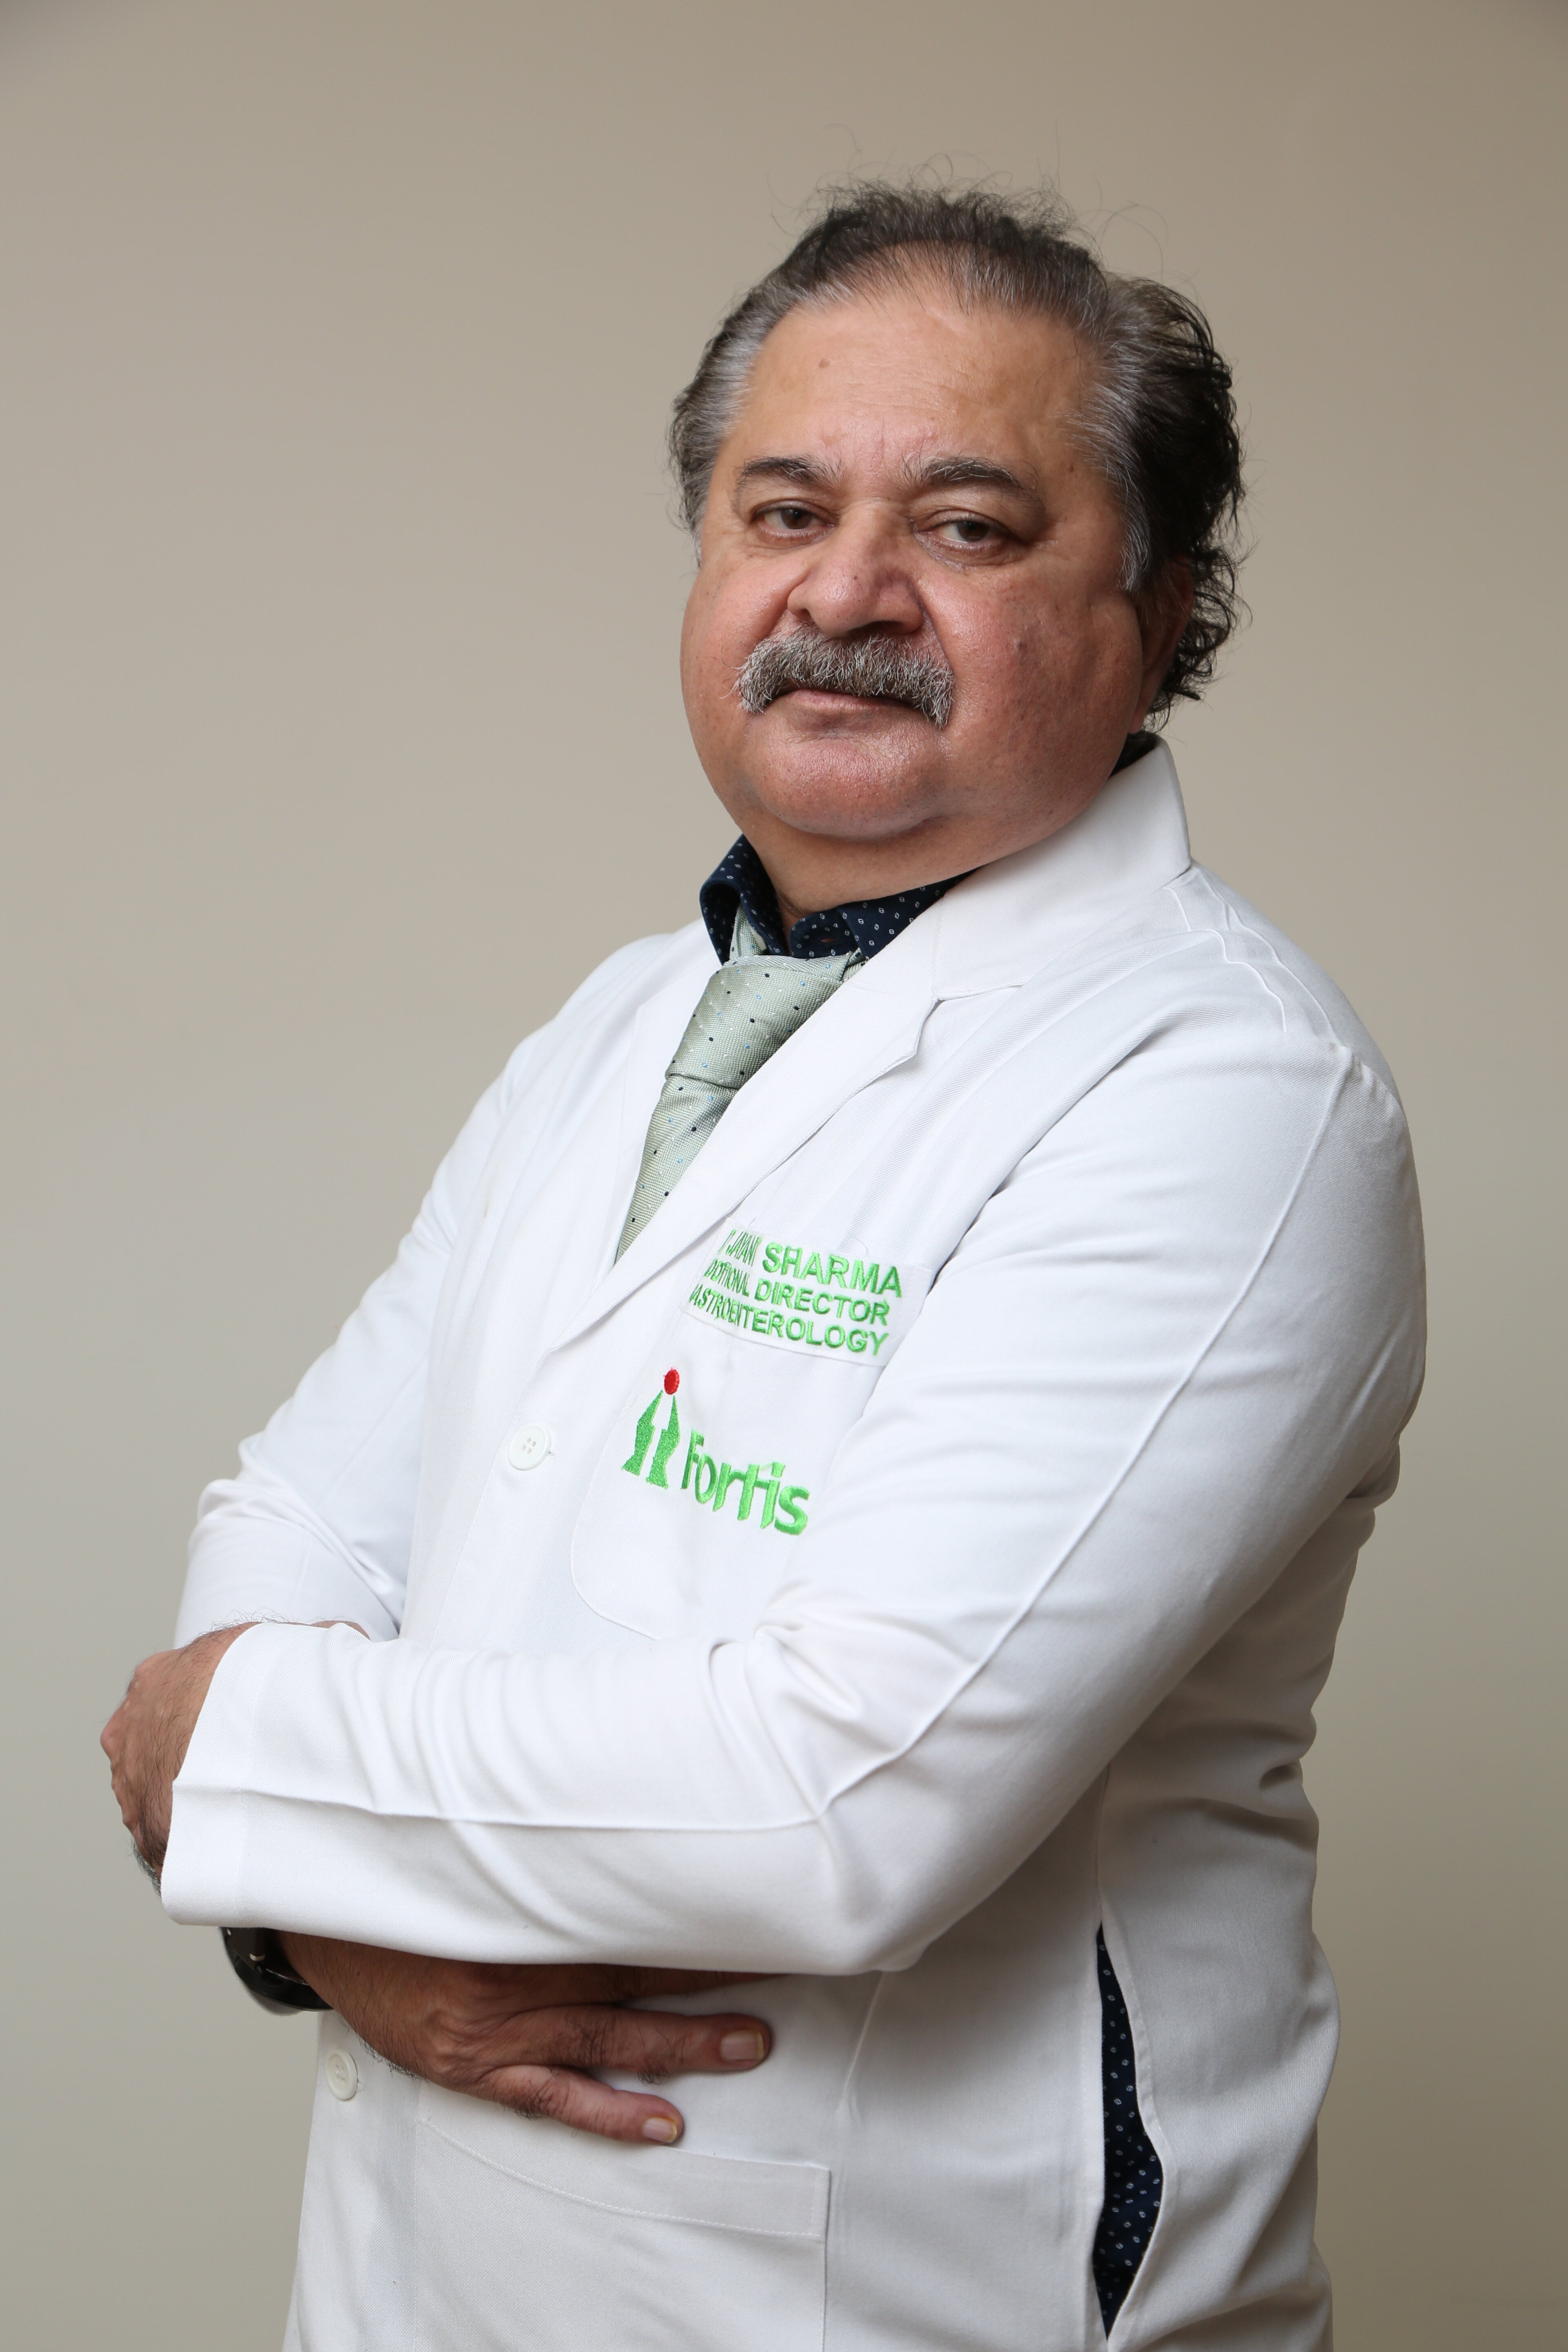 Dr. Jayant Sharma